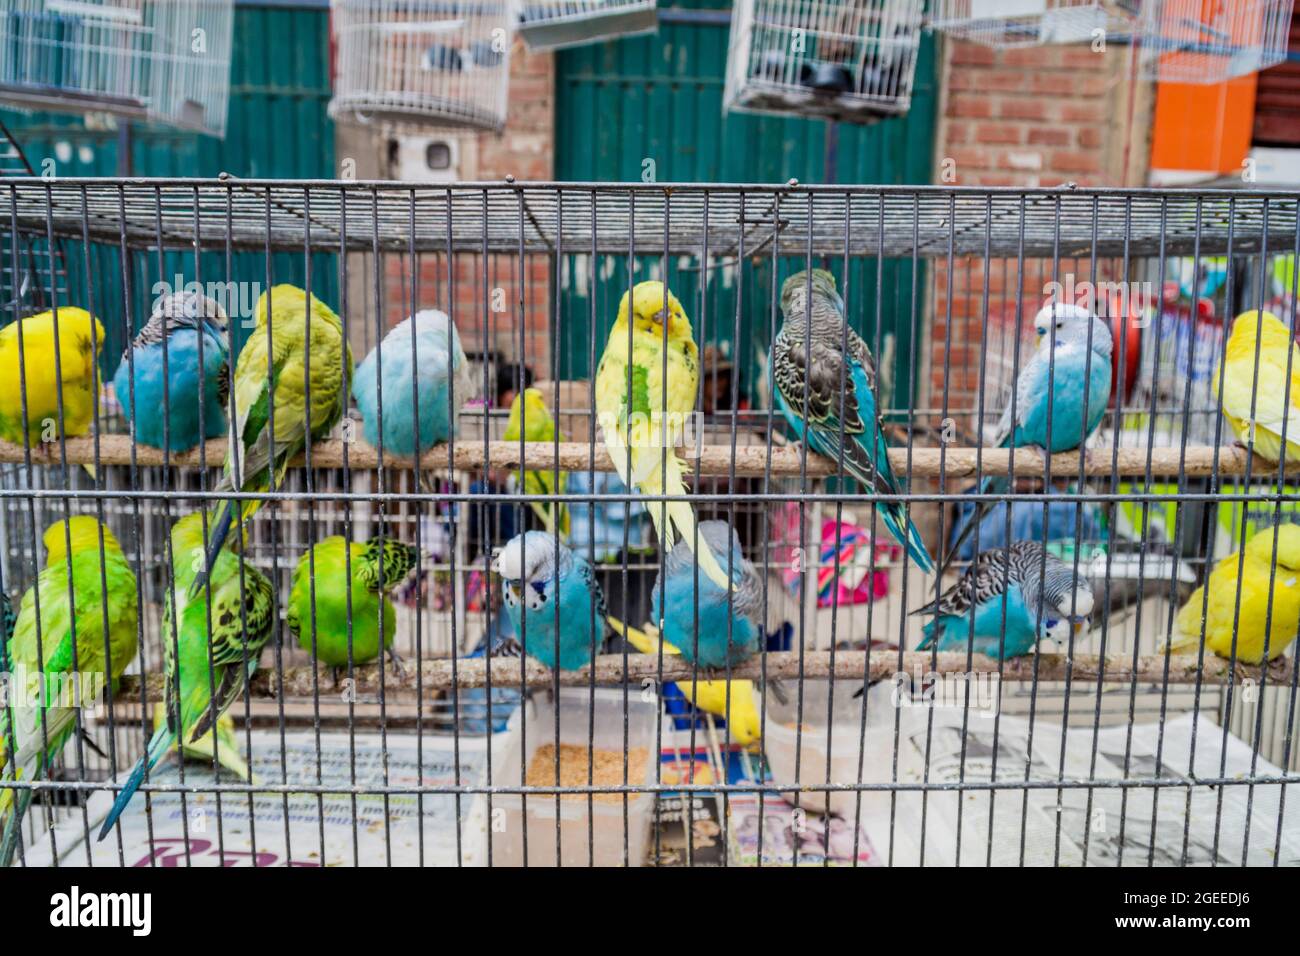 EL Alto, BOLIVIE - 23 AVRIL 2015: Perroquets dans une cage à vendre sur un marché à El Alto, Bolivie. Banque D'Images